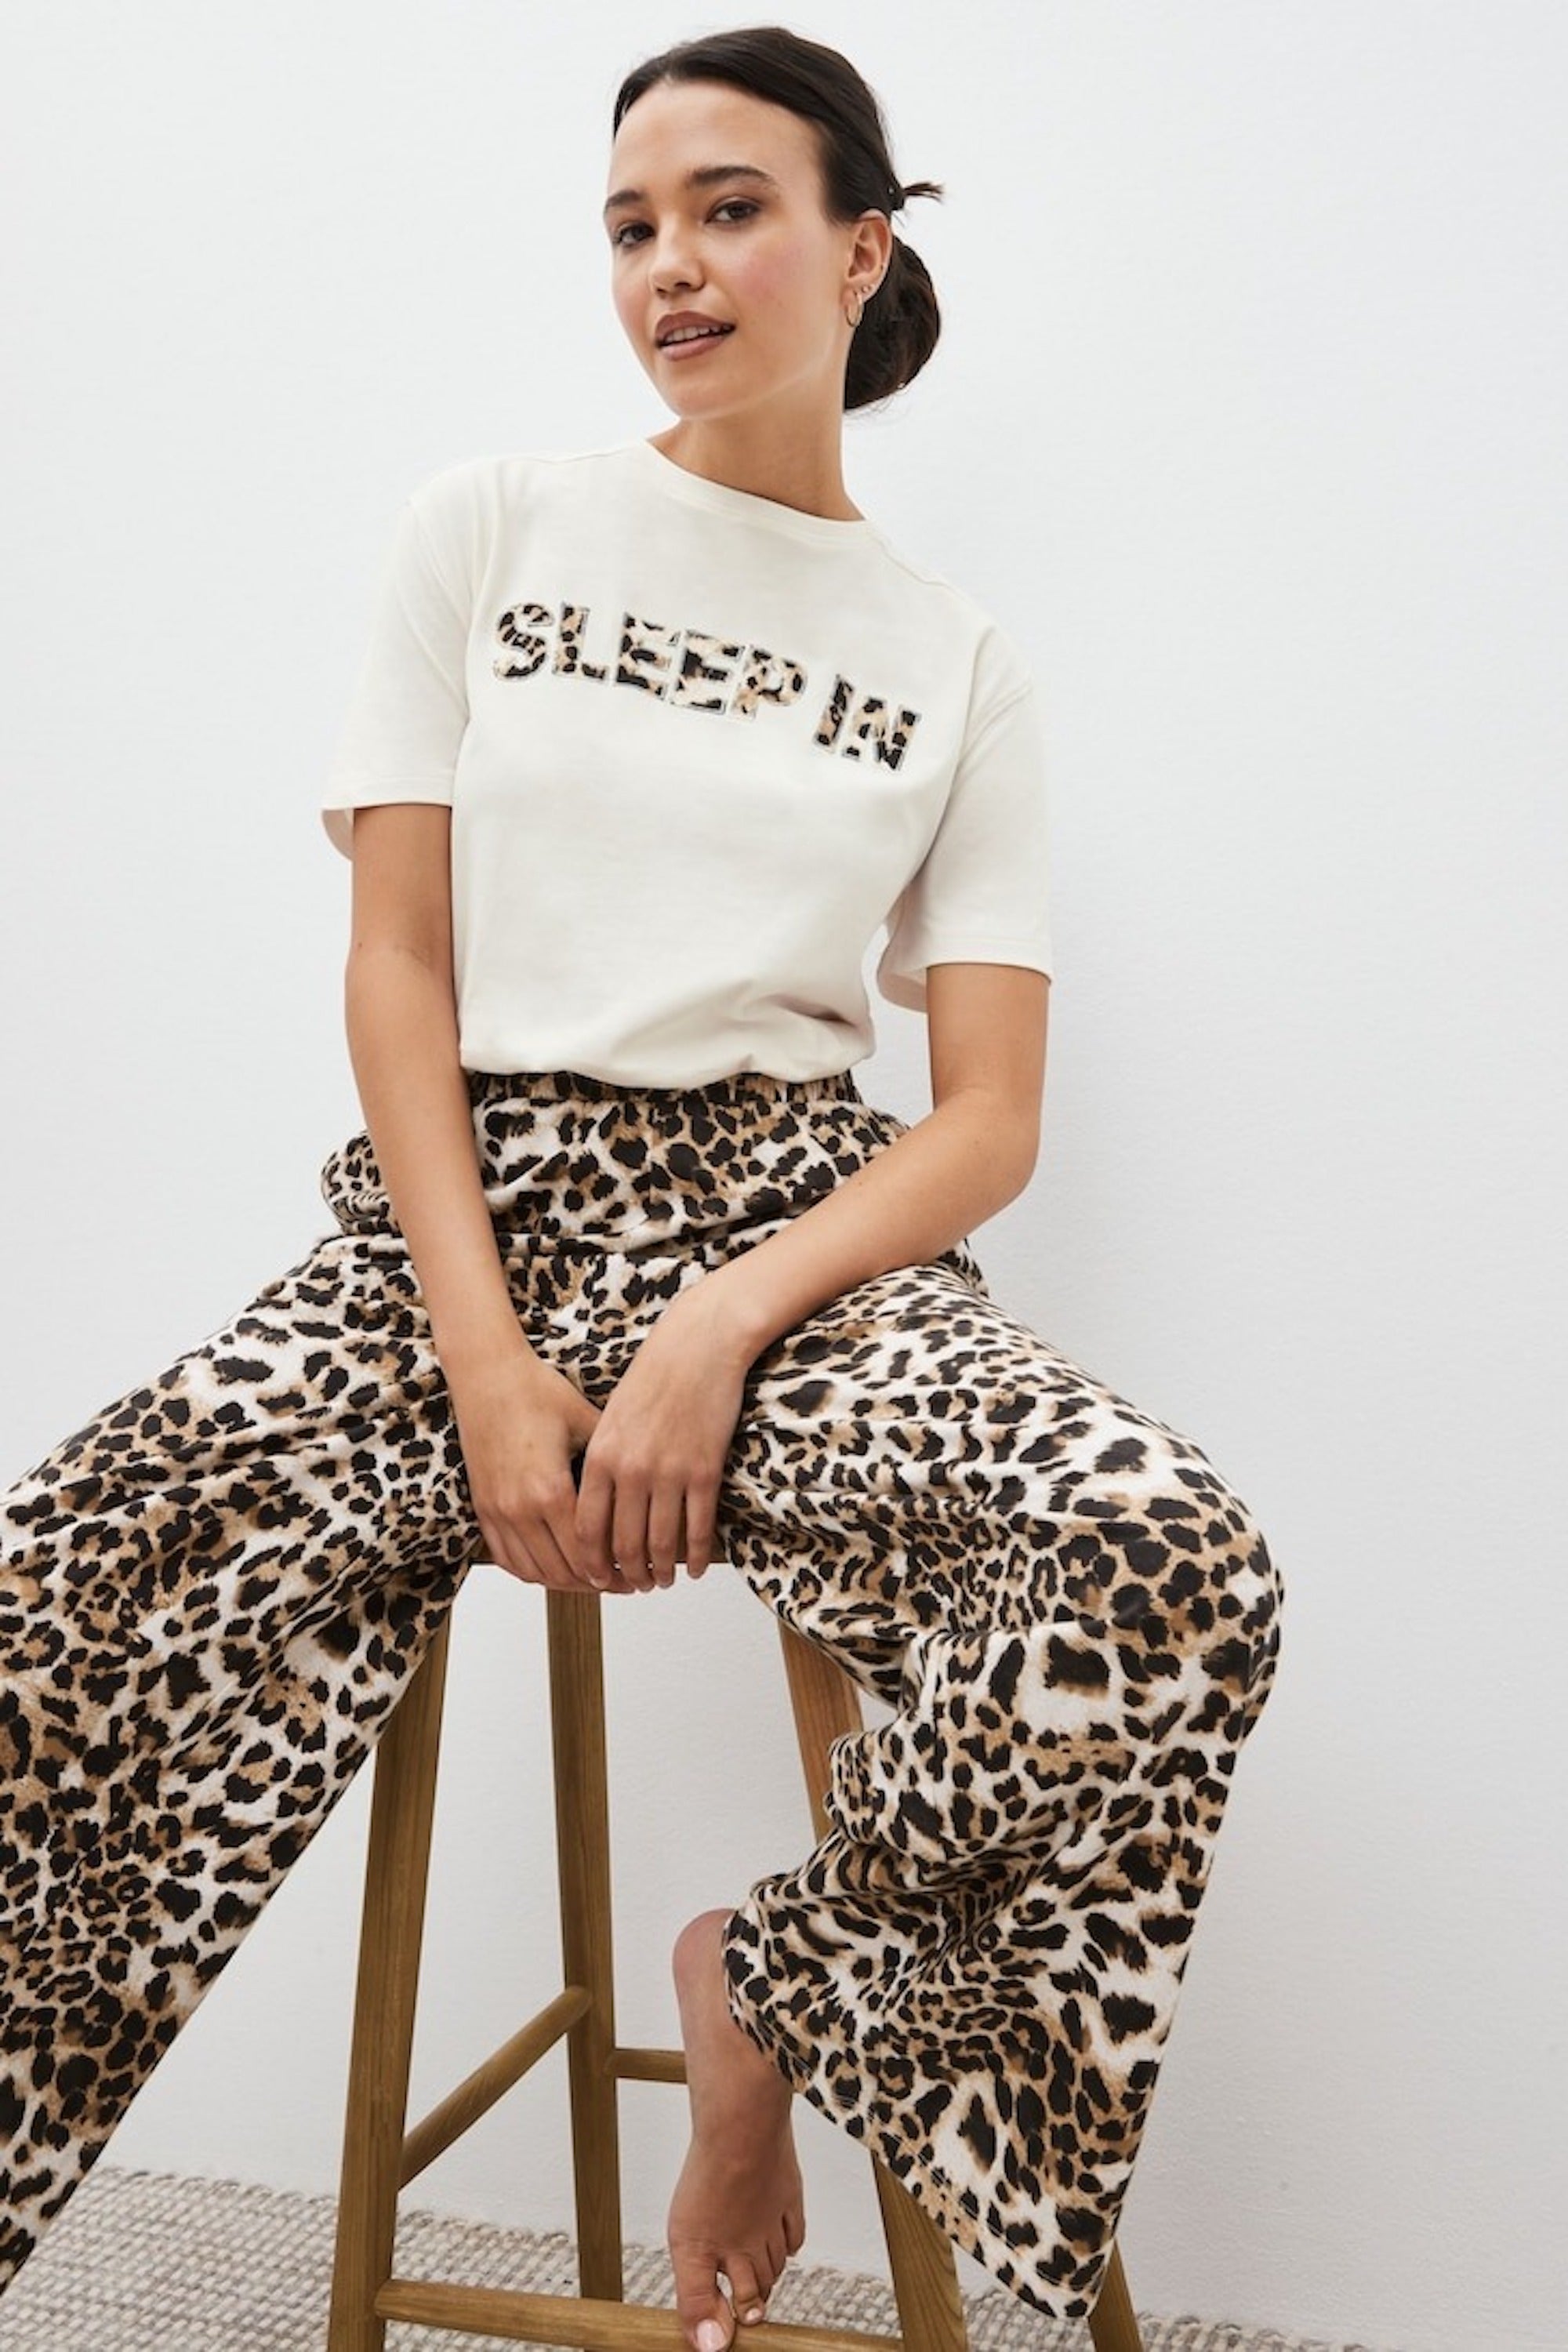 Fall/winter trends: 5 ways to wear leopard print